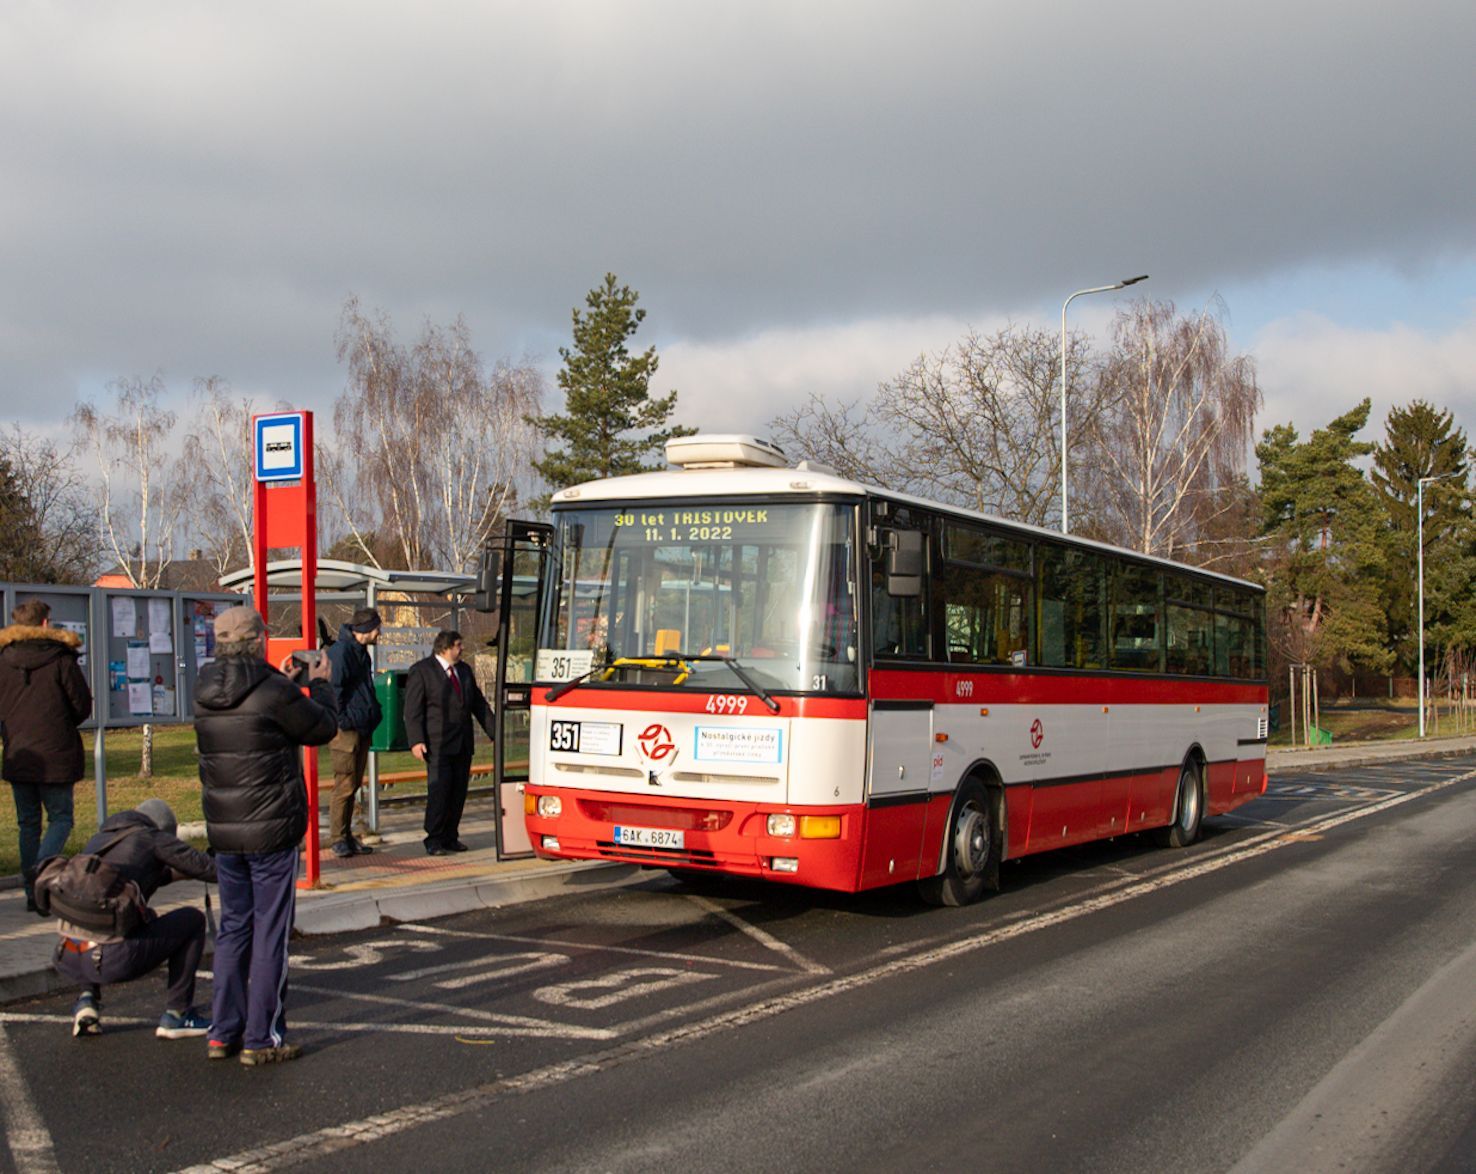 Autobus s č. 351 připomněl 30 let provozu příměstských linek